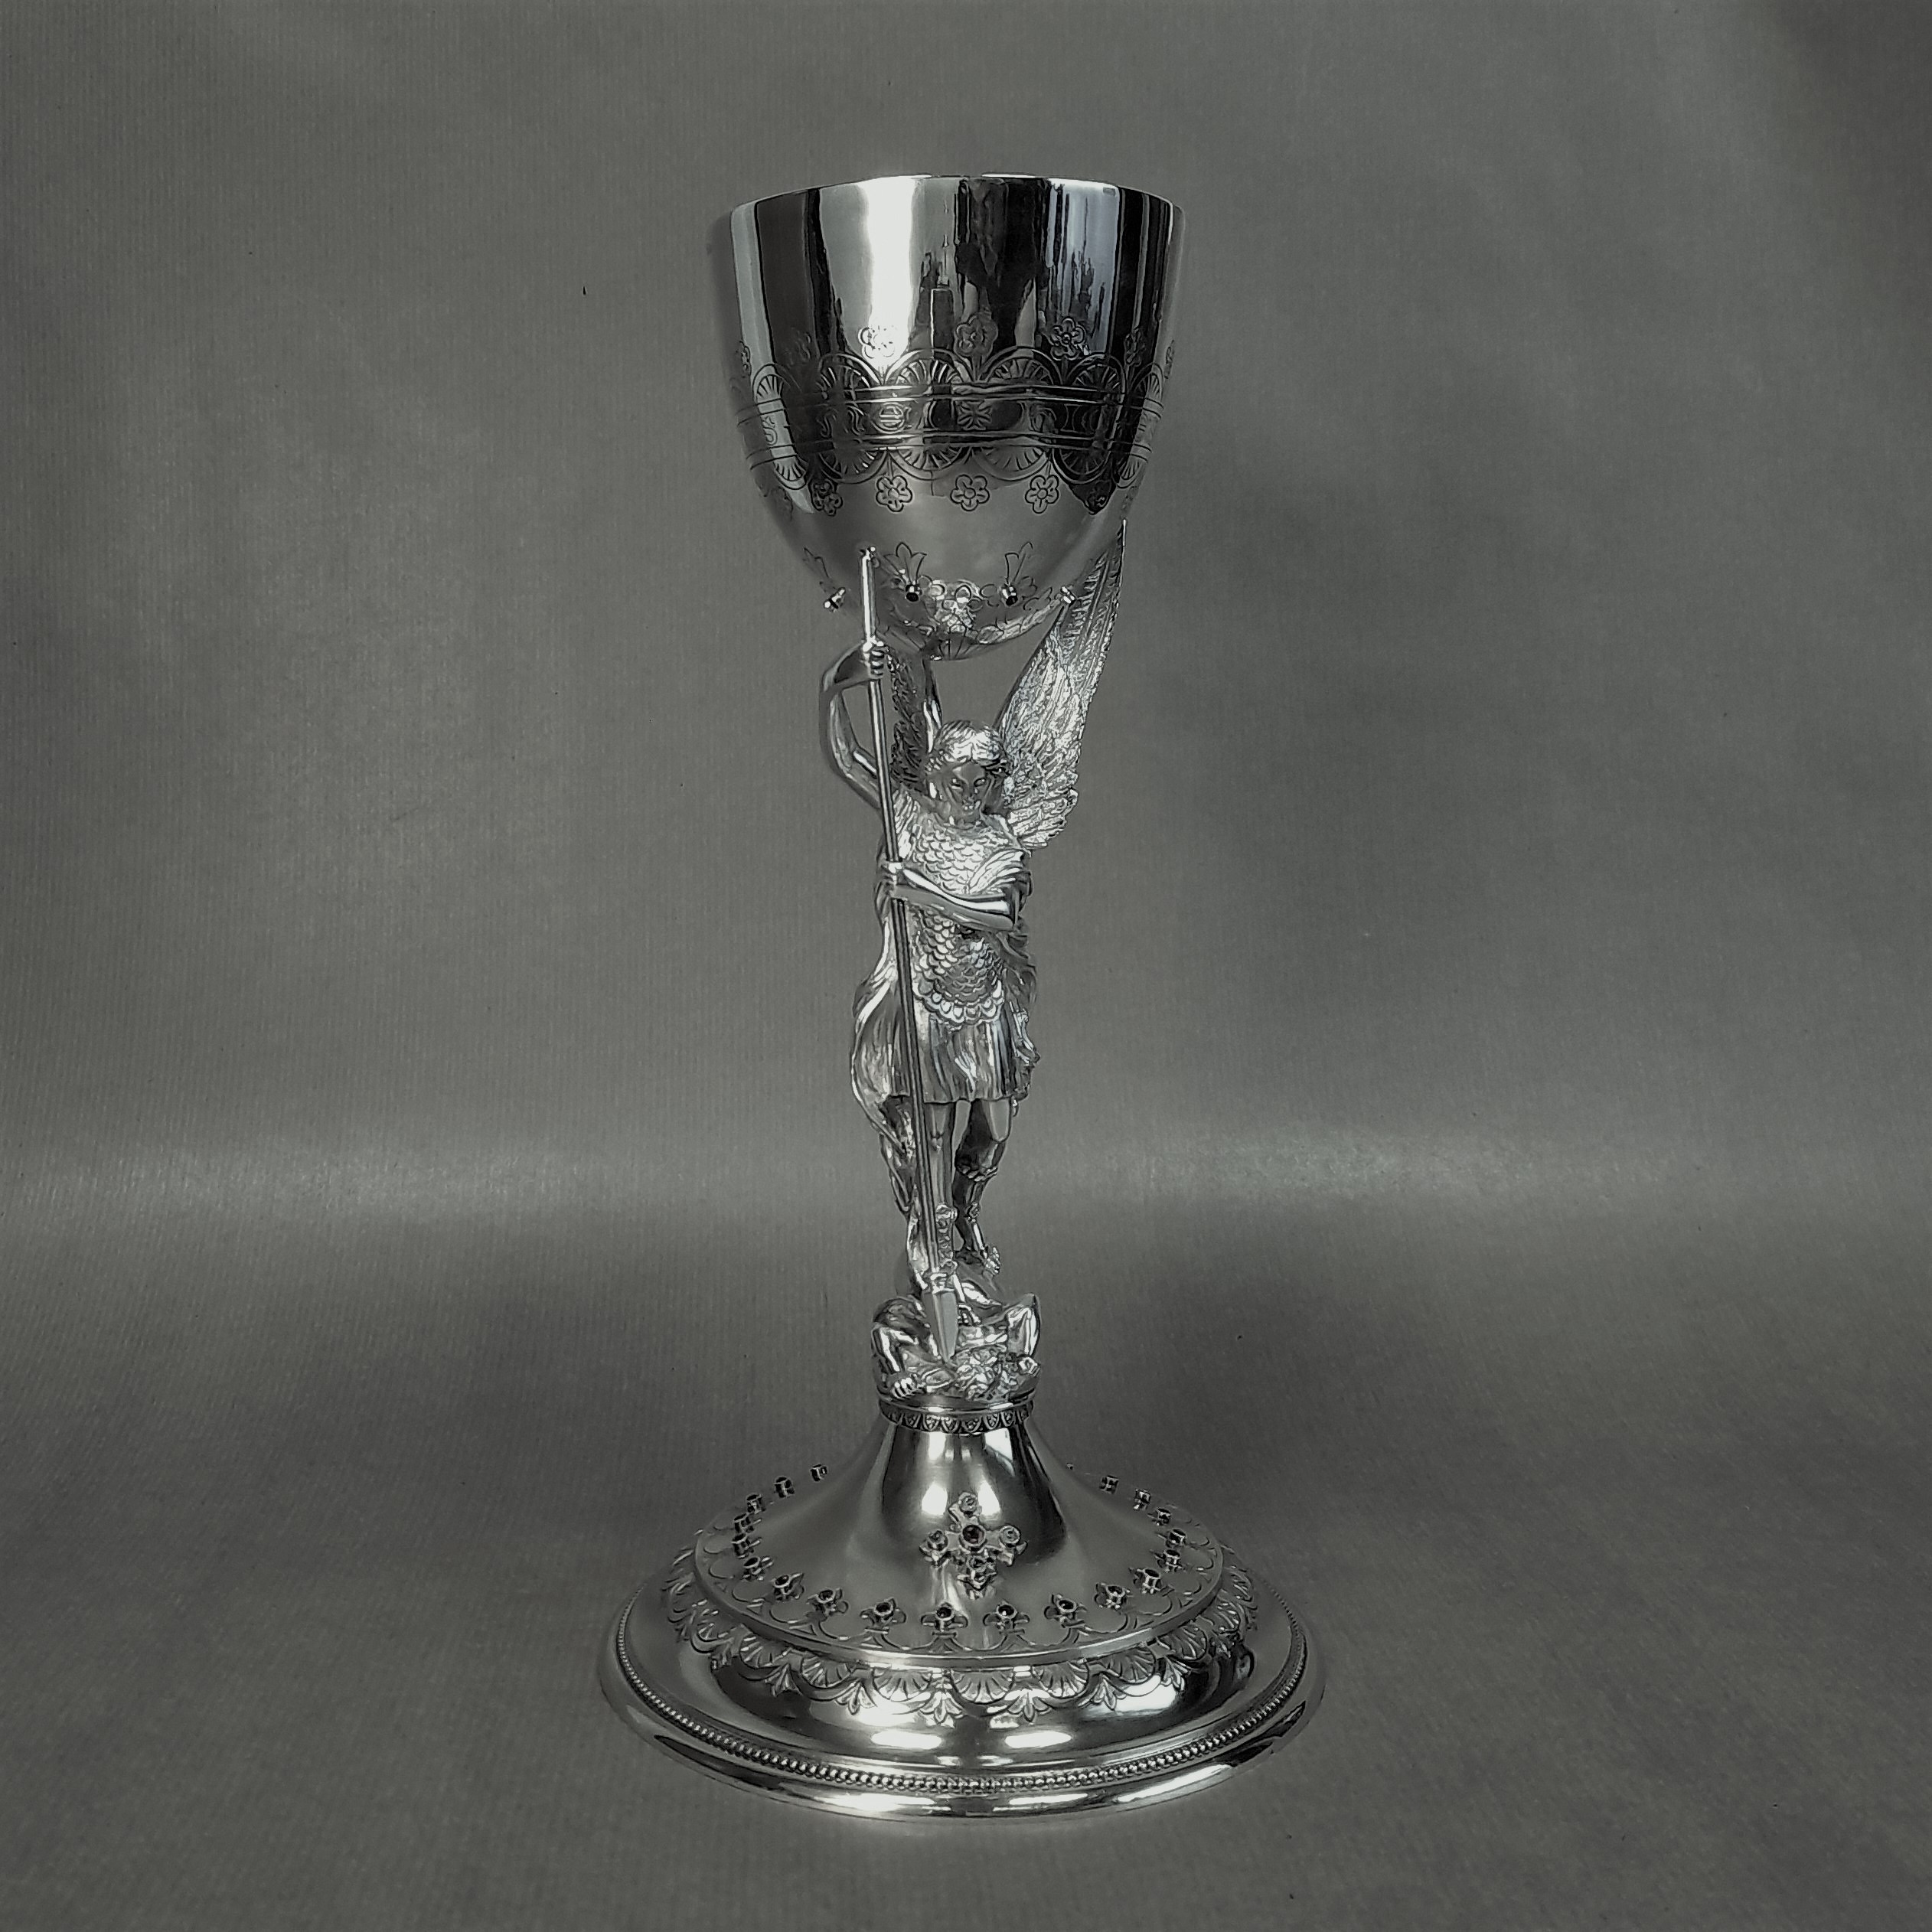 Calice Saint Michel en argent : redressage et brasure de la coupe, après démontage et sertissage des 8 rubis - Collection particulière